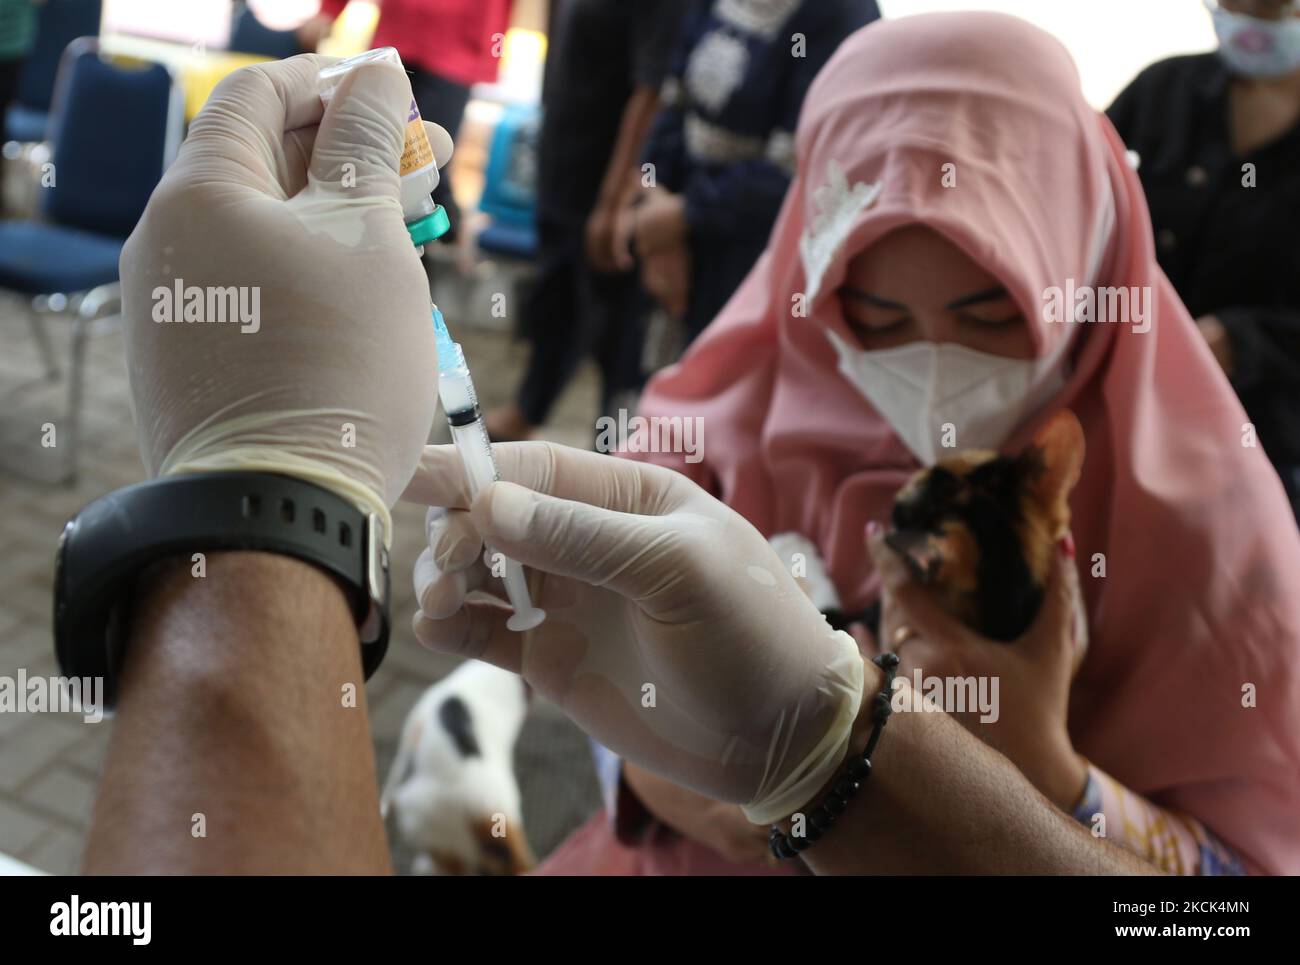 BUKIT DURI, JAKARTA, AGUSTUS - 24 : Petugas Sudin Ketahanan Pangan, Kelautan dan Pertanian (KPKP) menyuntikkan vaksin rabies kepada kucing peliharaan milik warga di Kelurahan Bukit Duri, Jakarta, pada Agustus, 24,2021. Vaksinasi rabies yang diberikan oleh Sudin Ketahanan Pangan, Kelautan dan Pertanian (KPKP) ini bertujuan mencegah penyebaran penyakit rabies di wilayah Jakarta Selatan serta menjaga kesehatan hewan peliharaan milik warga. (Photo by Dasril Roszandi/NurPhoto) Stock Photo